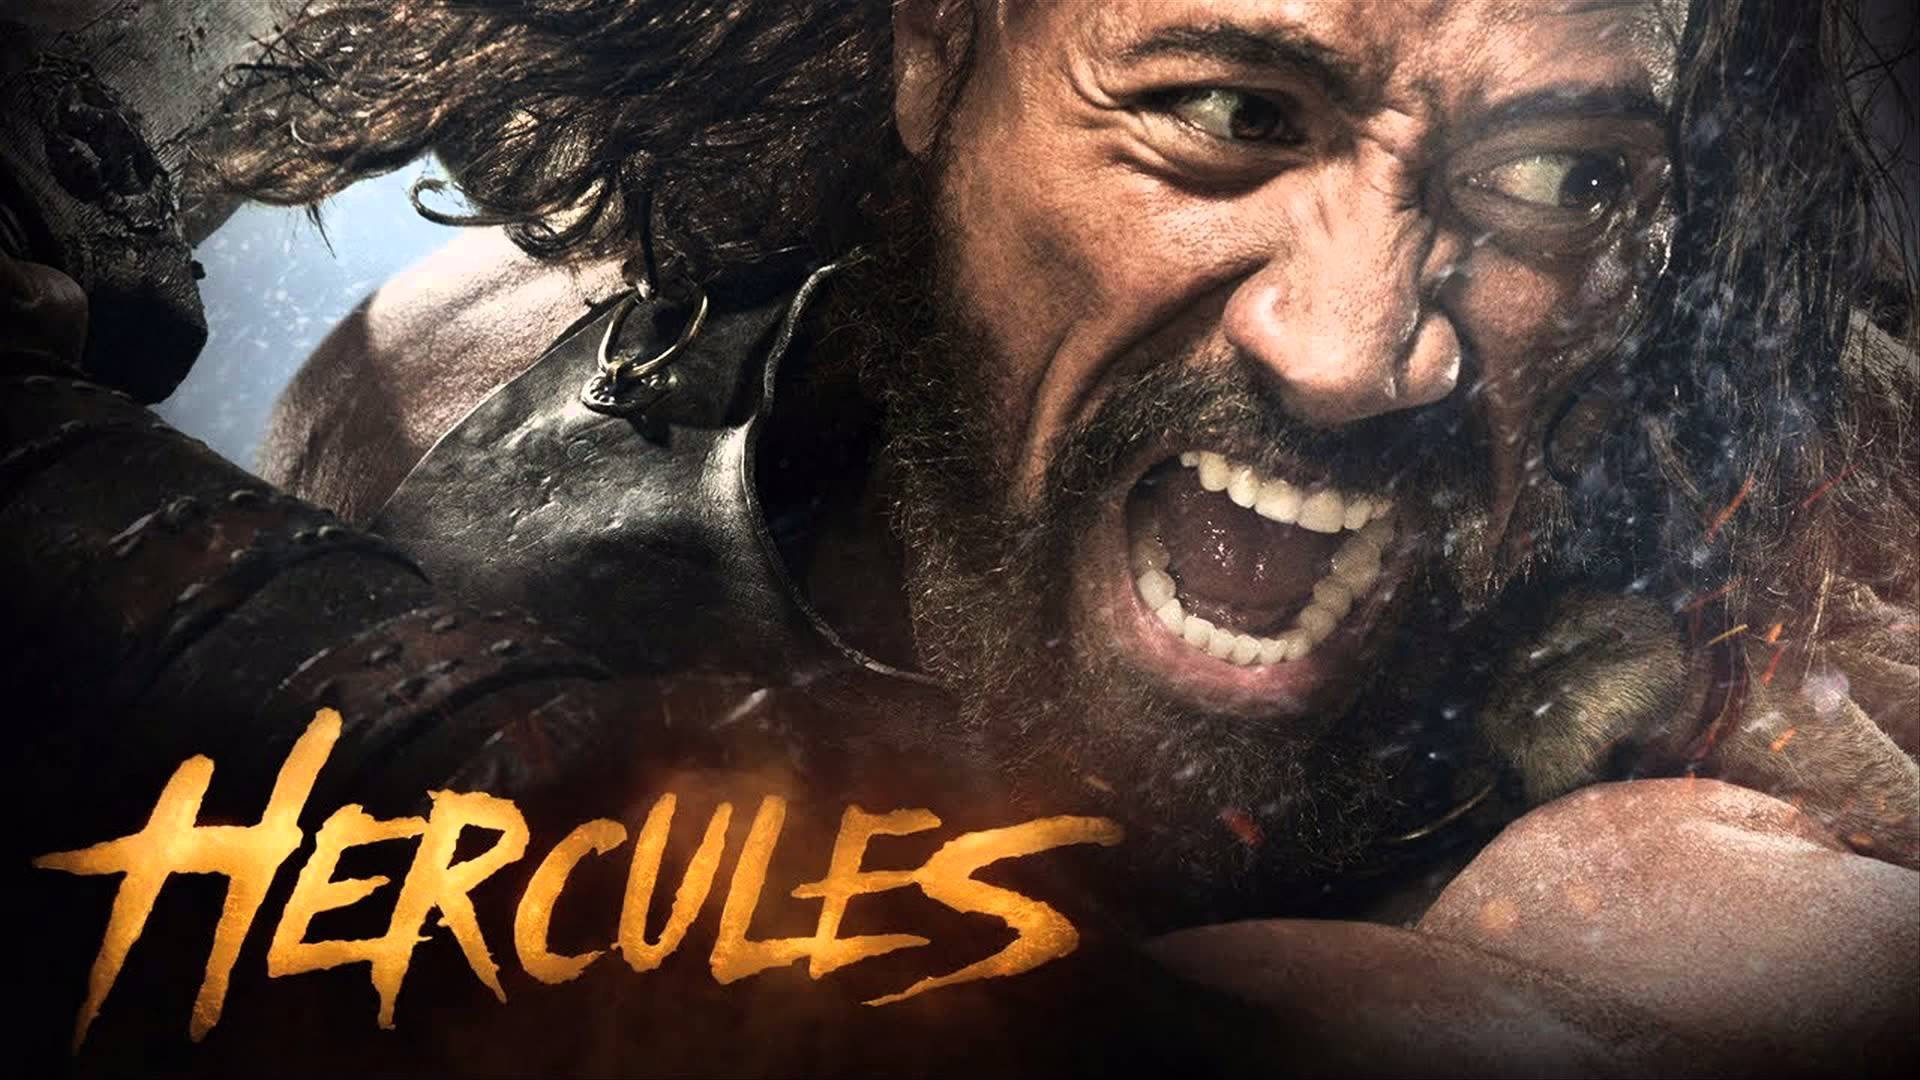 Hercules Pictures Wallpaper